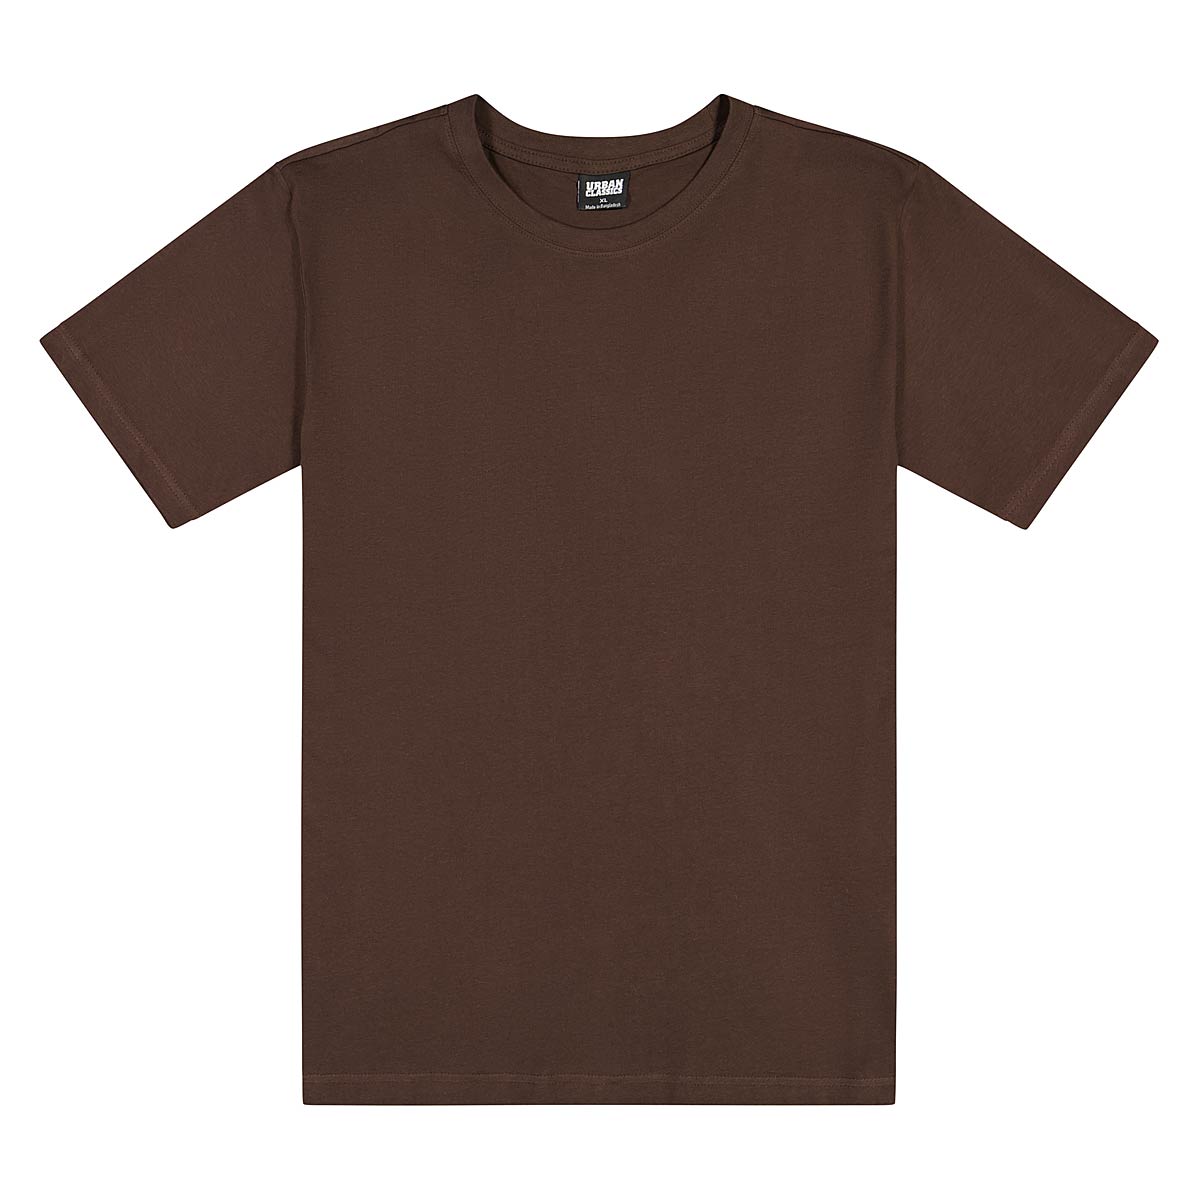 Urban Classics Tall T-Shirt, Brown